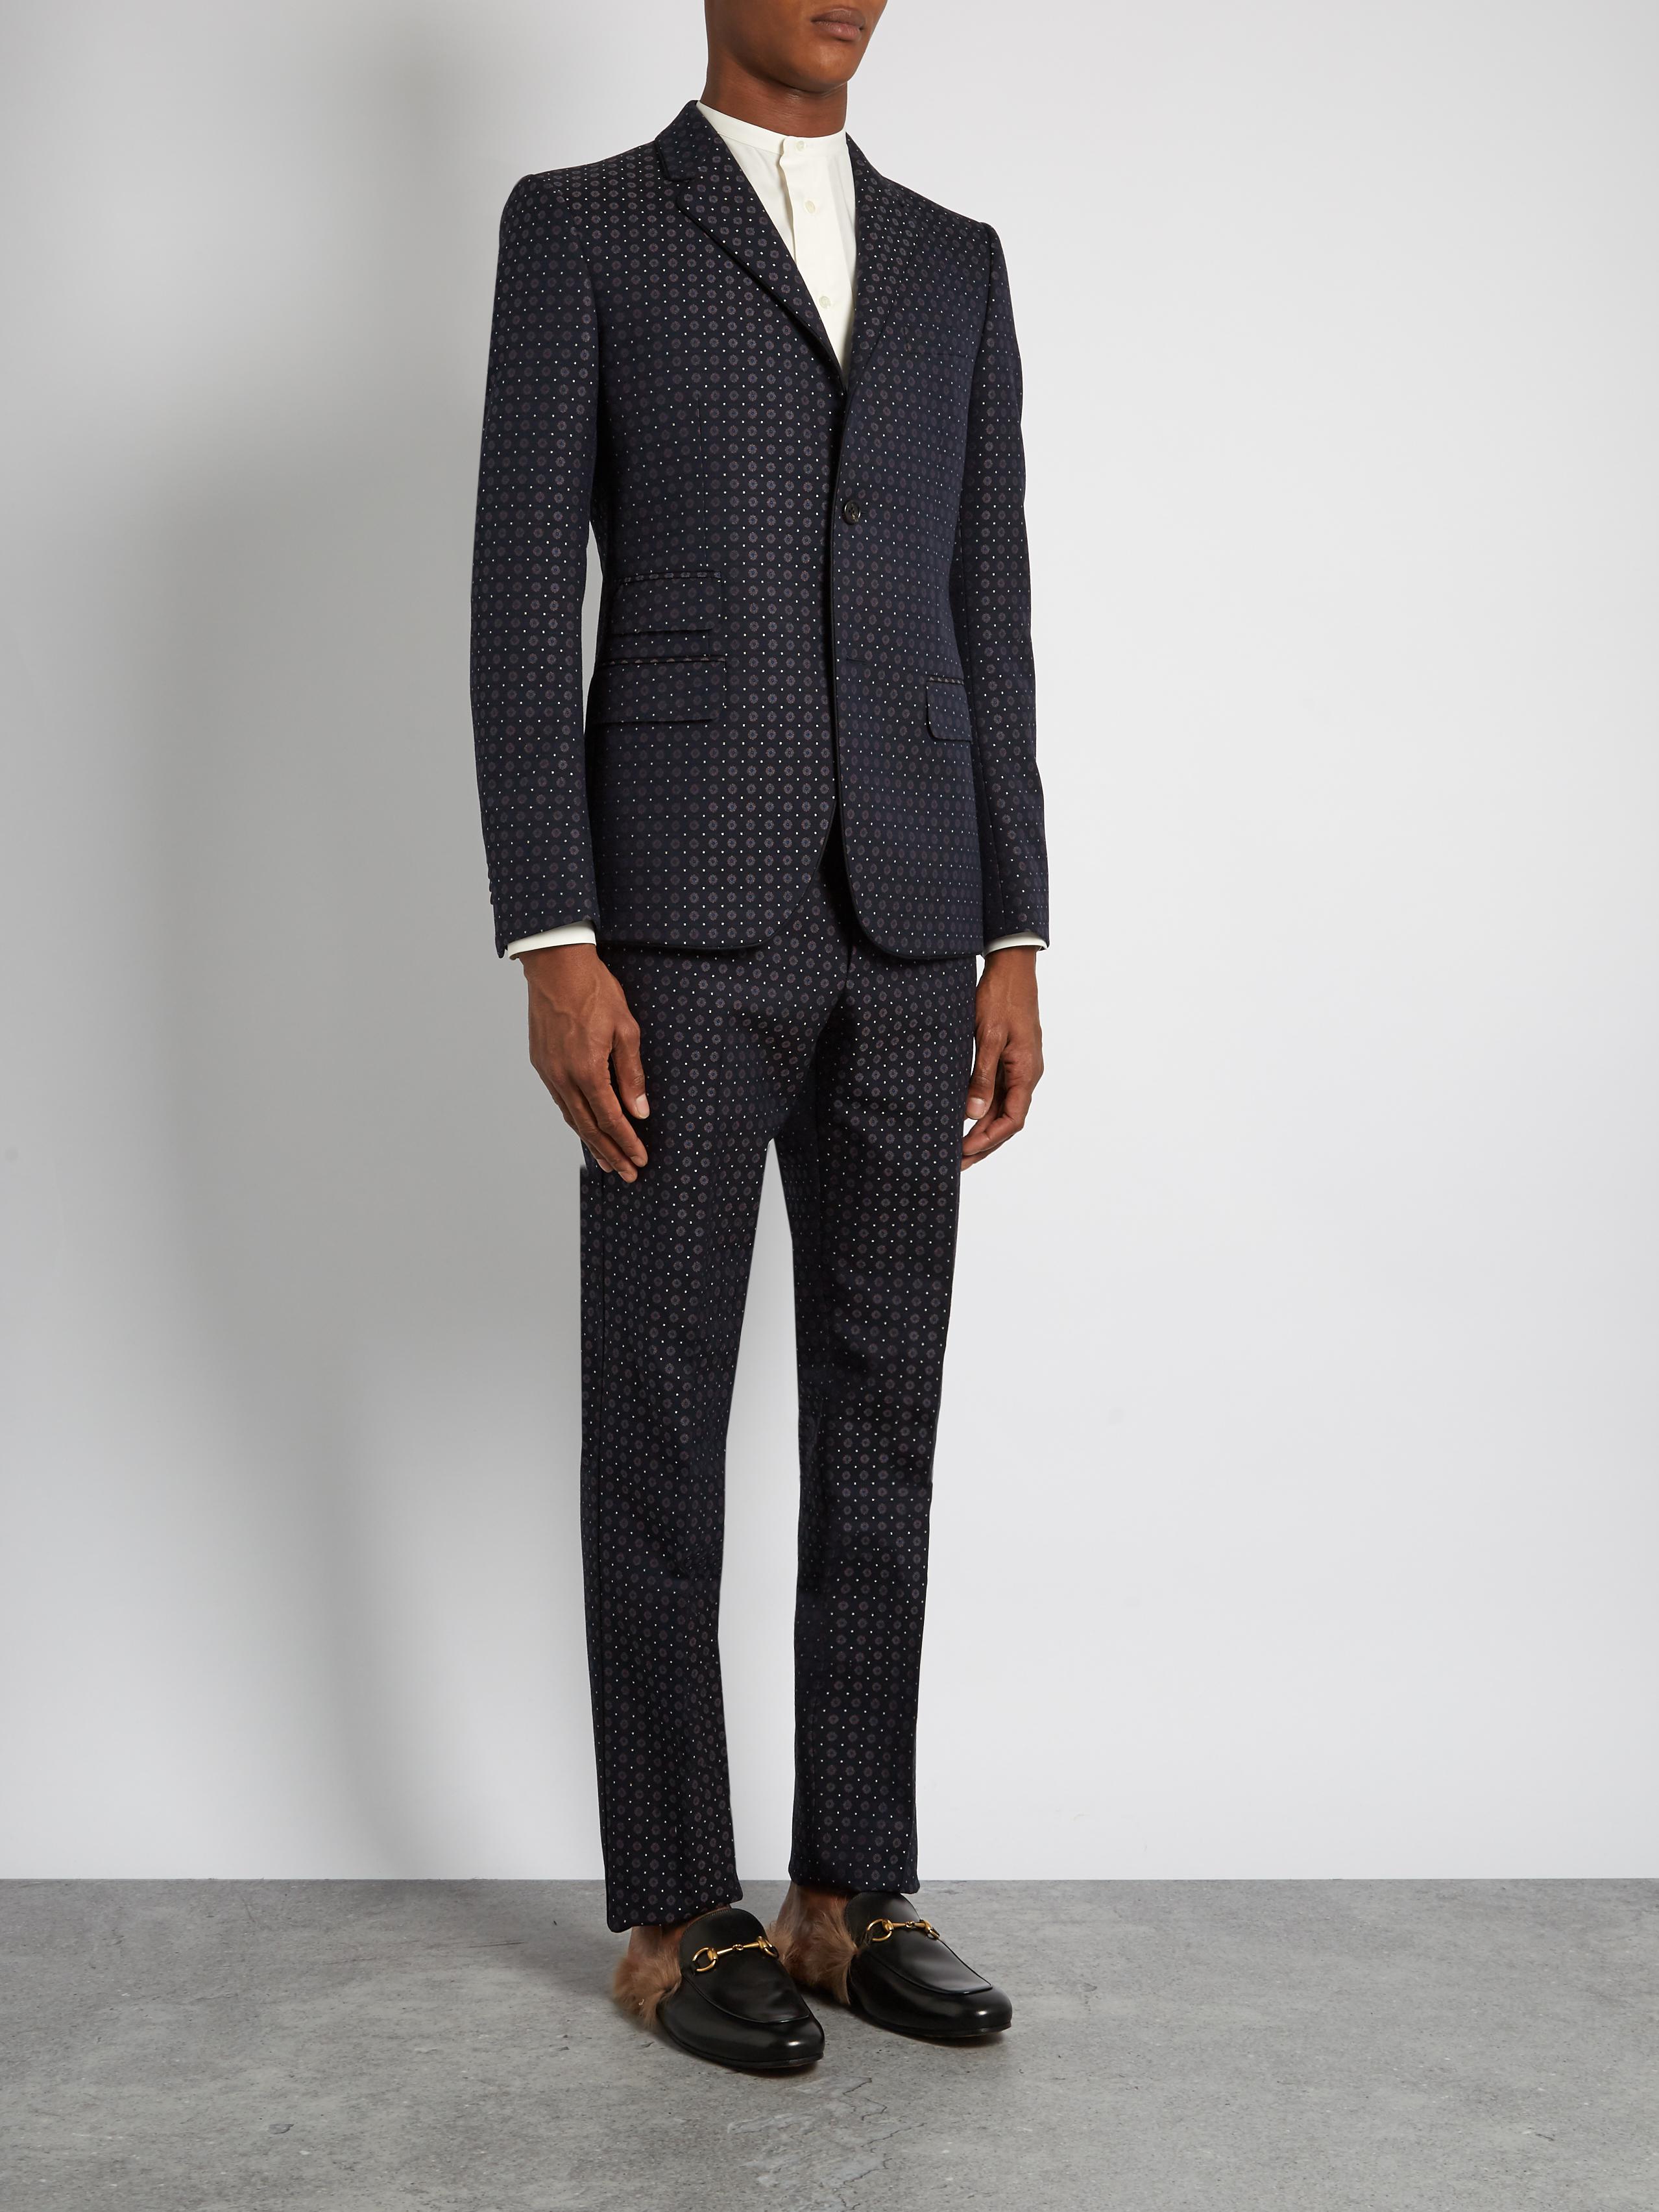 Gucci Monaco Cotton-blend Jacquard Suit in Navy (Blue) for Men - Lyst